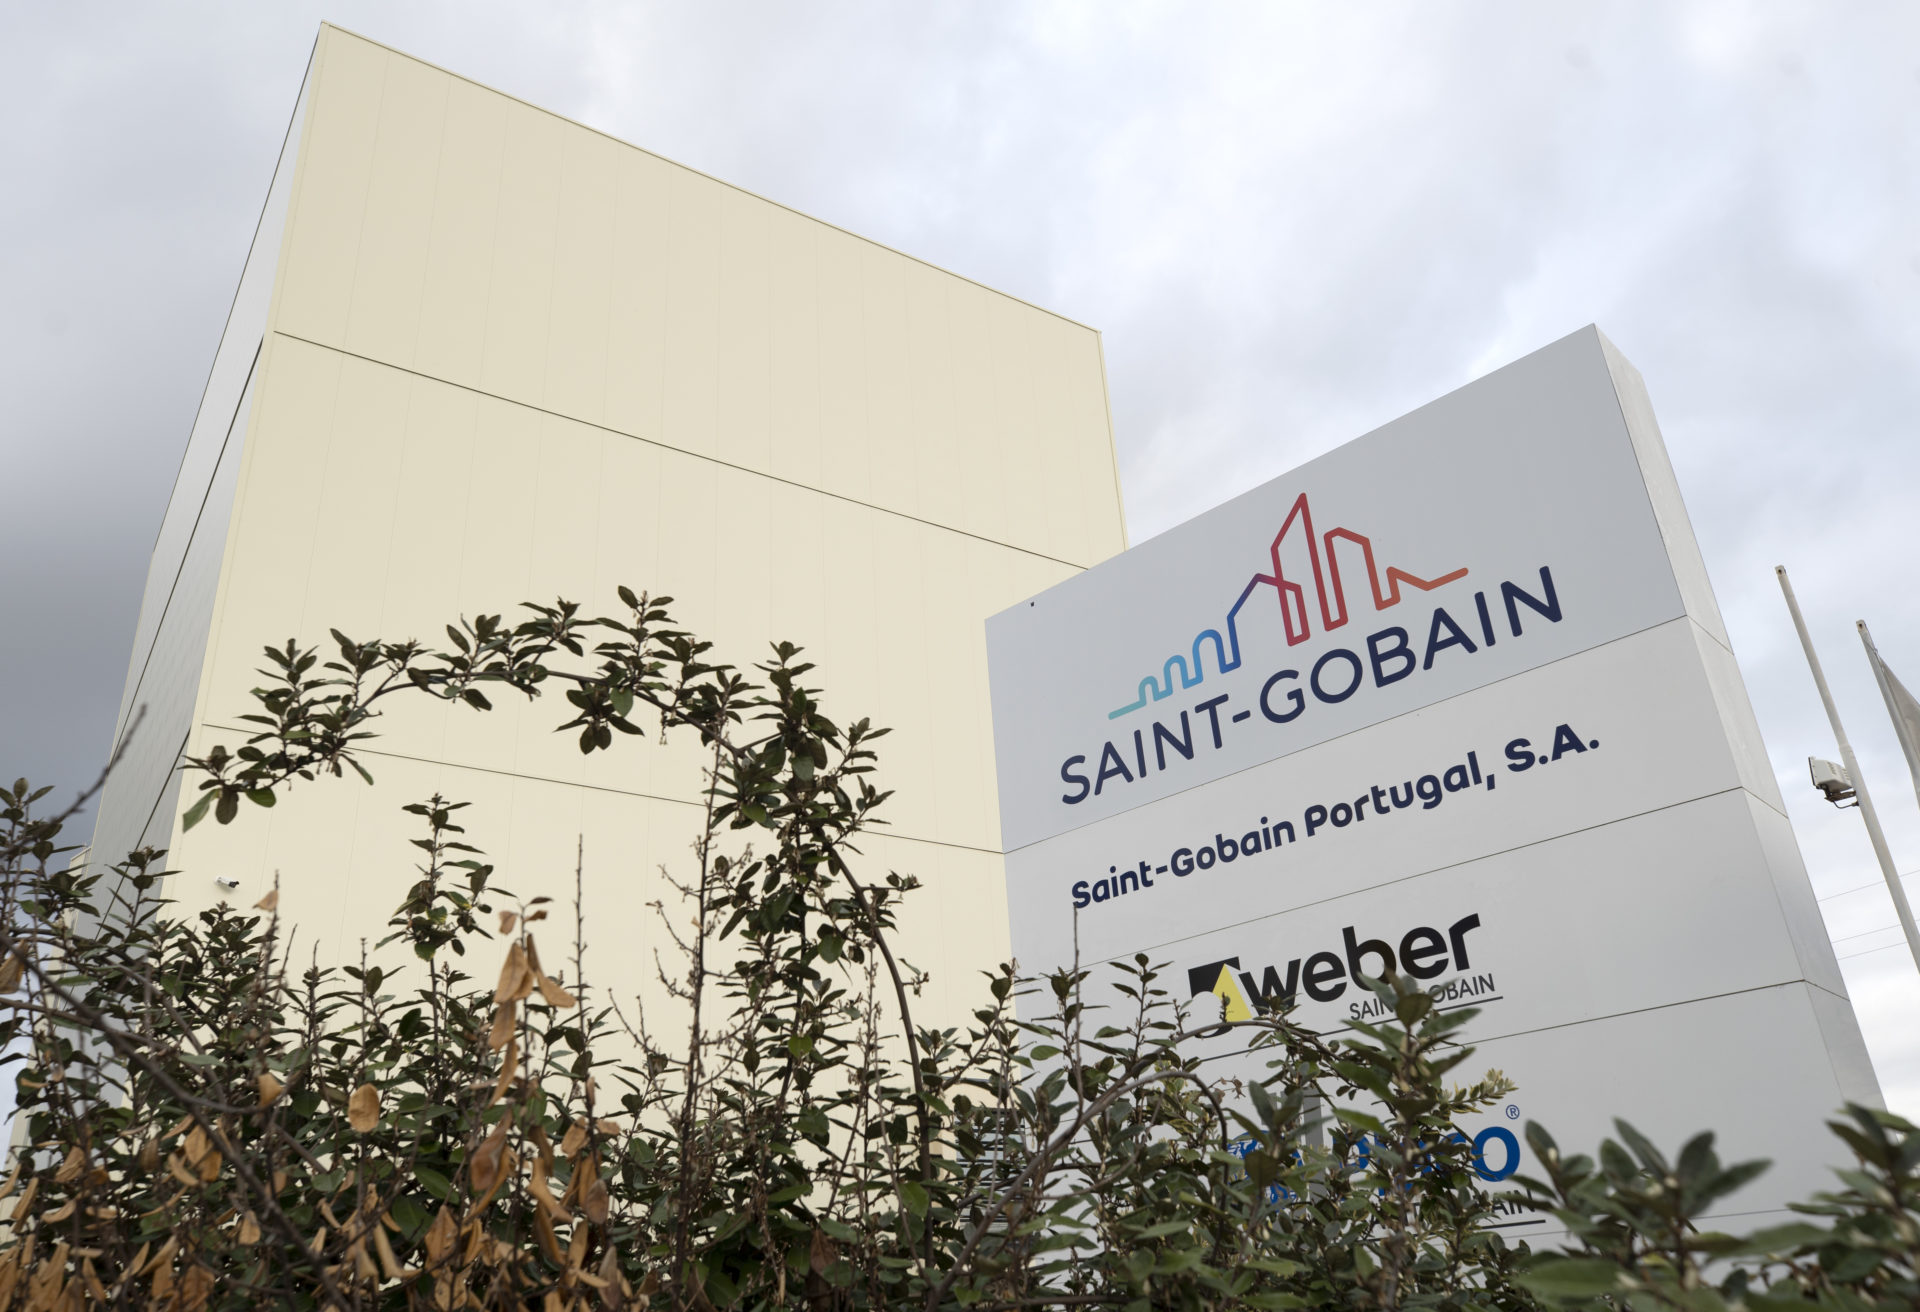 Saint-Gobain regista resultados record em todos os indicadores no primeiro semestre de 2021